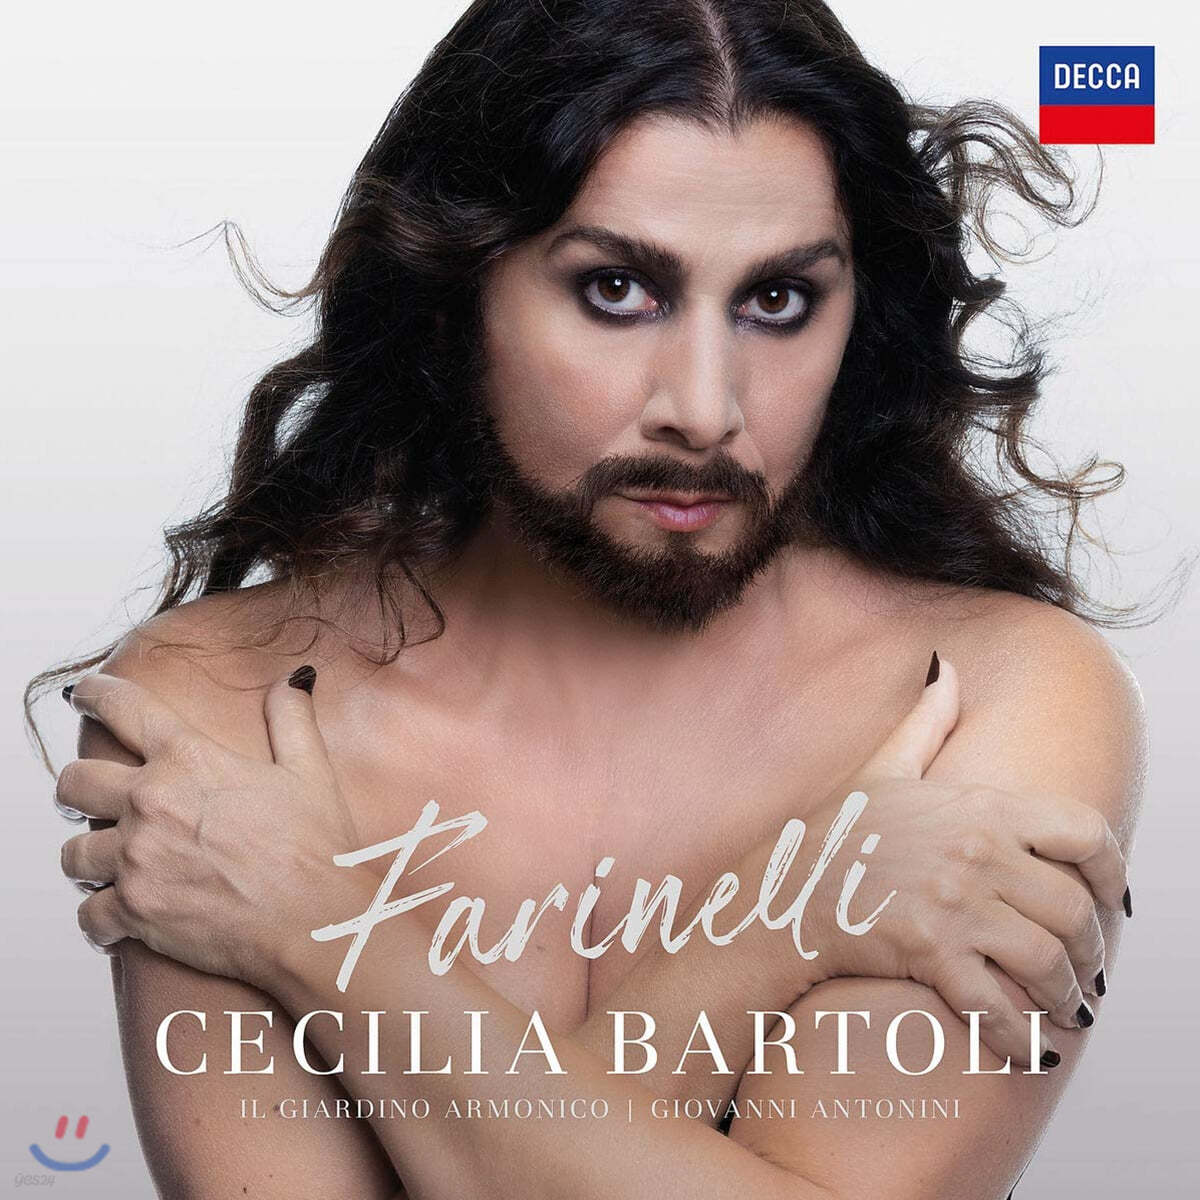 Cecilia Bartoli 체칠리아 바르톨리 - 파리넬리를 위한 작품 (Farinelli)